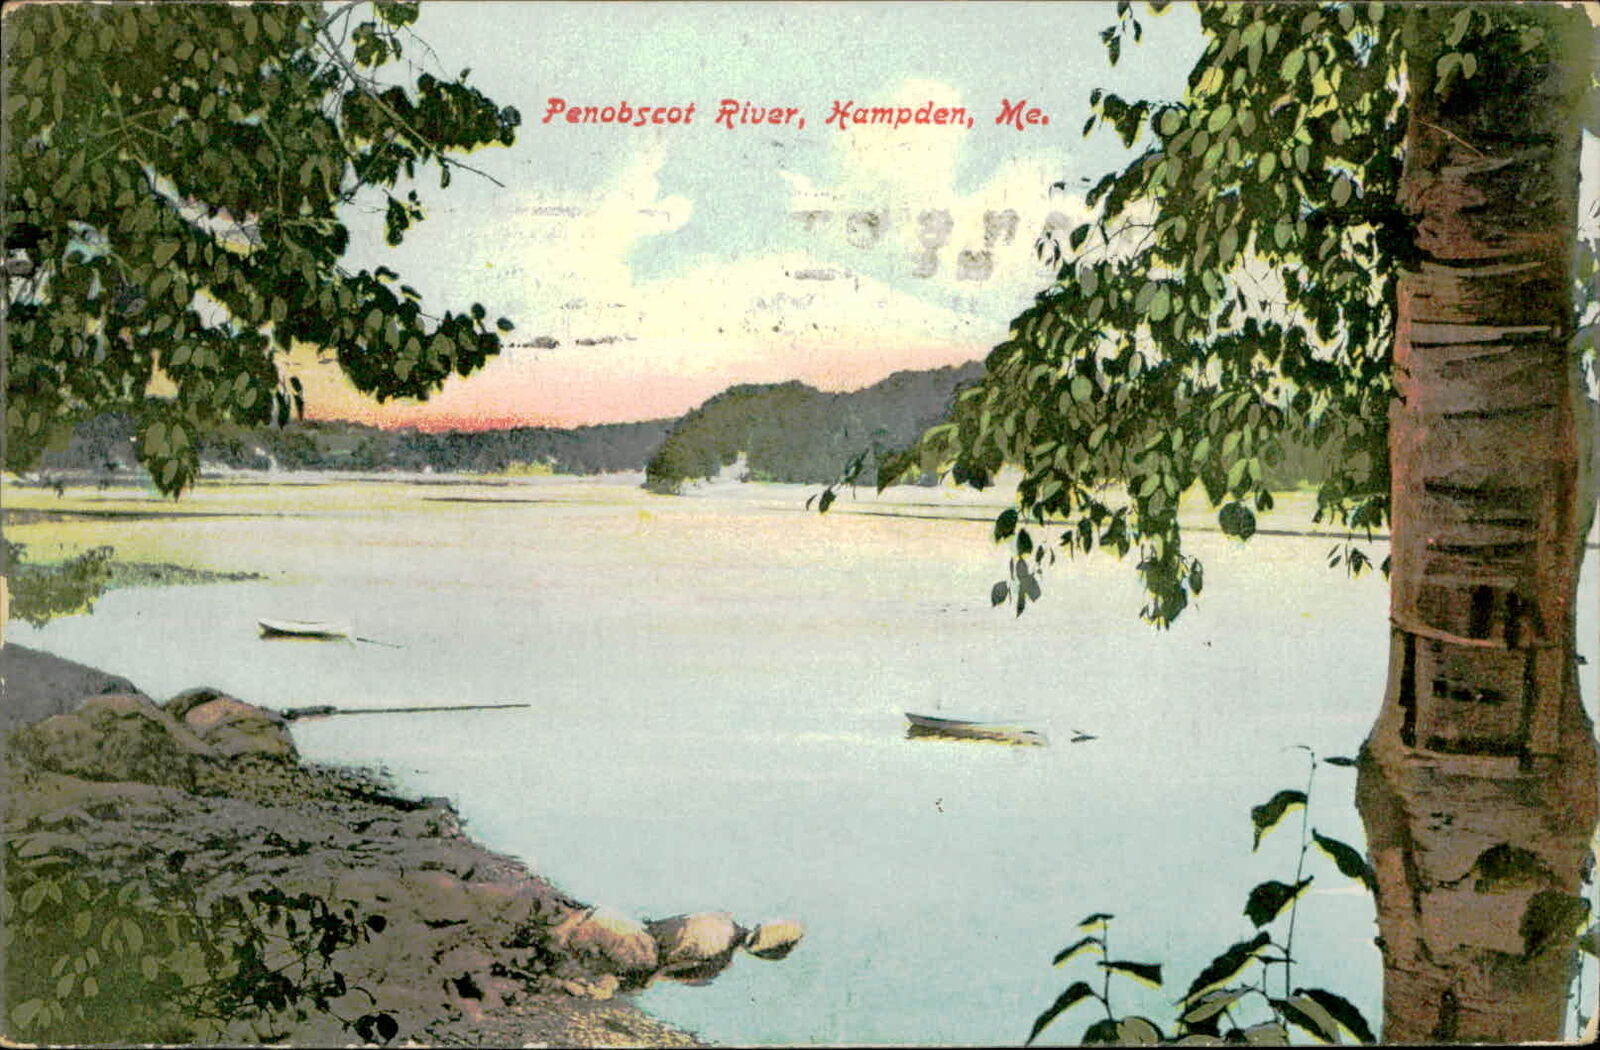 Postcard: Penobscot River, Hampden, Me.